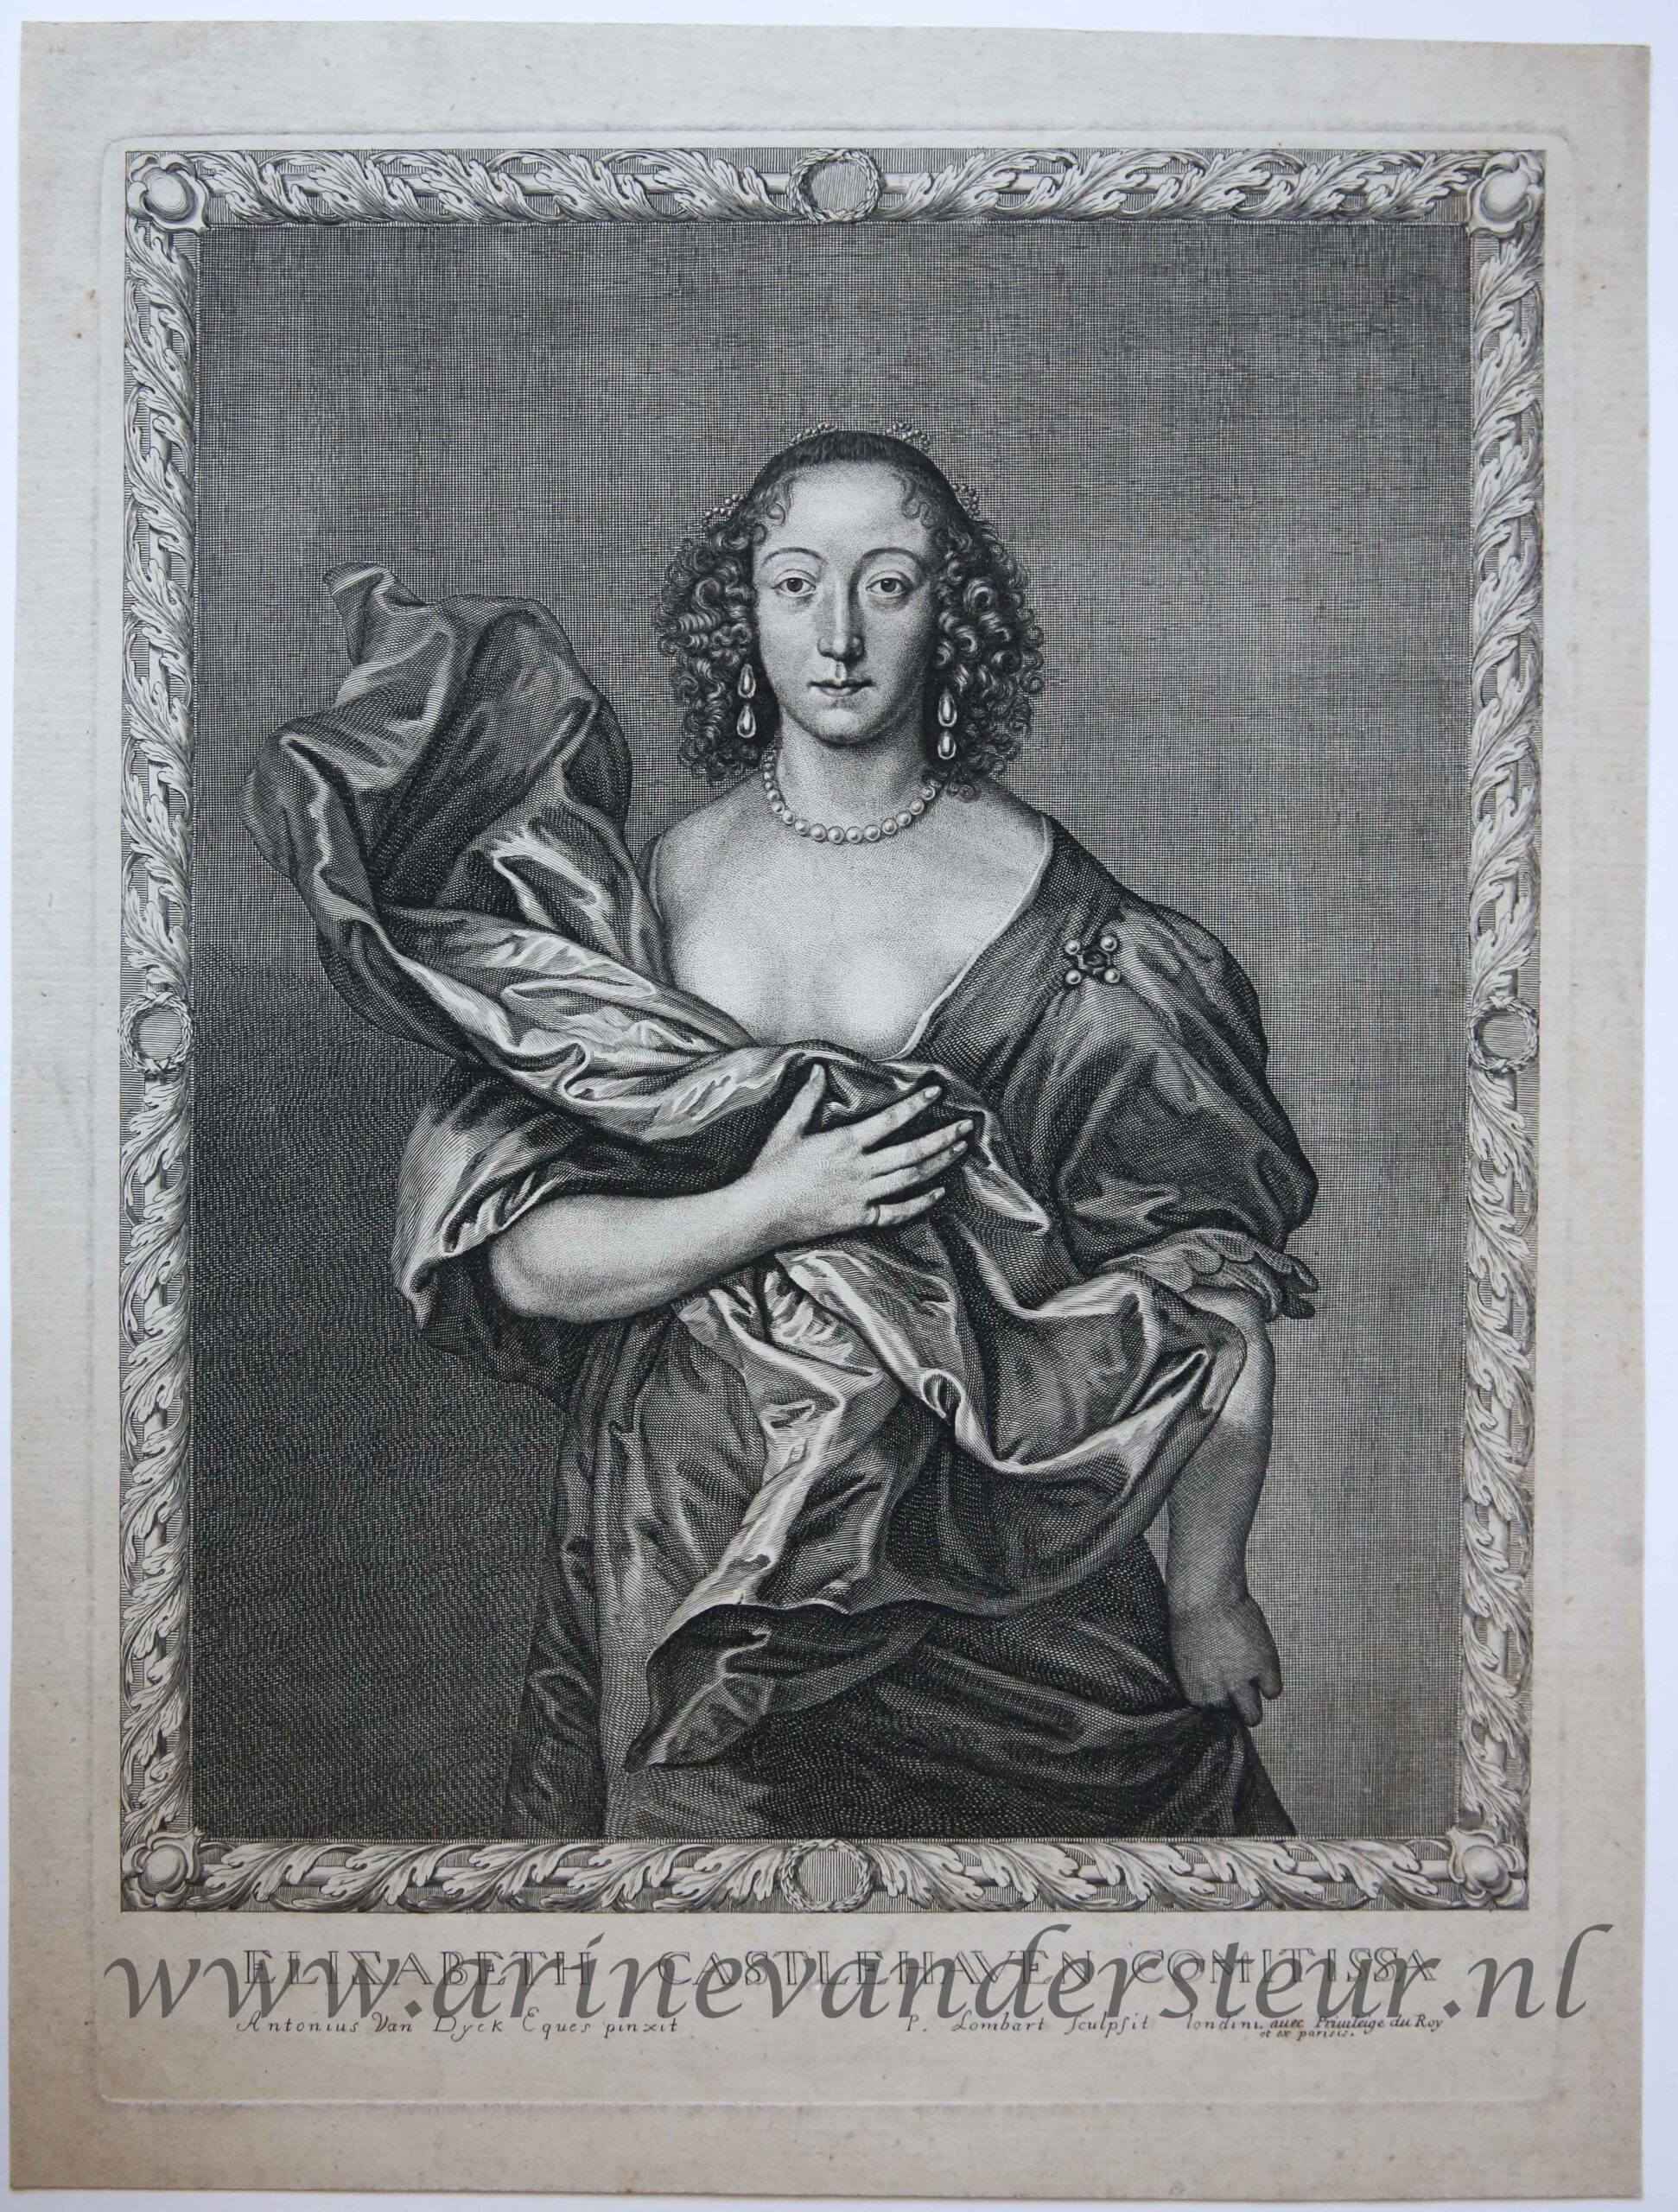 [Antique portrait print, engraving] ELIZABETH CASTLEHAVEN COMITISSA (Elizabeth, Countess of Castlehaven), published c. 1660.